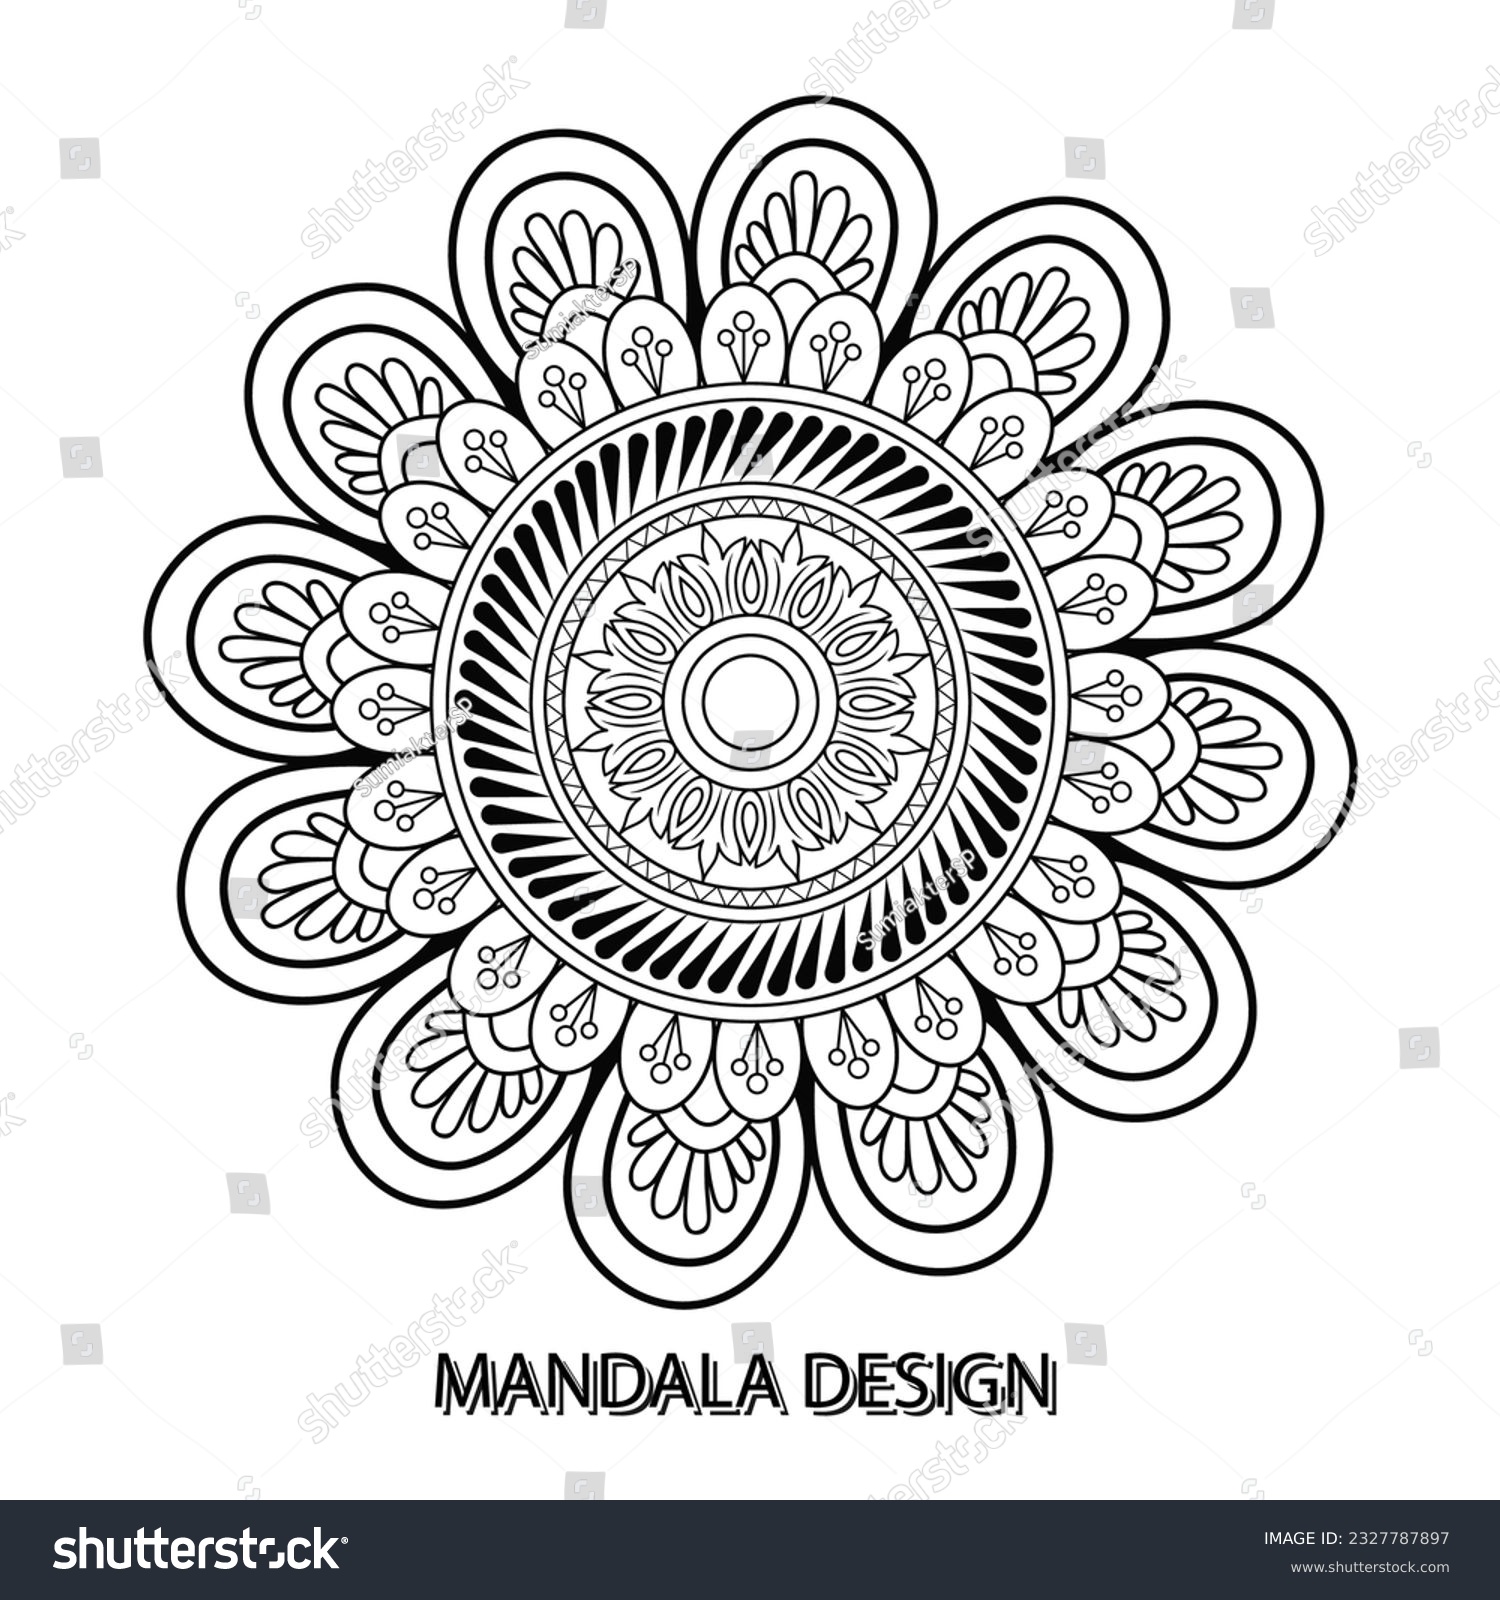 SVG of  Mandala Vector Design Template SVG, Ai, EPS, PDF, JPG, PNG File svg